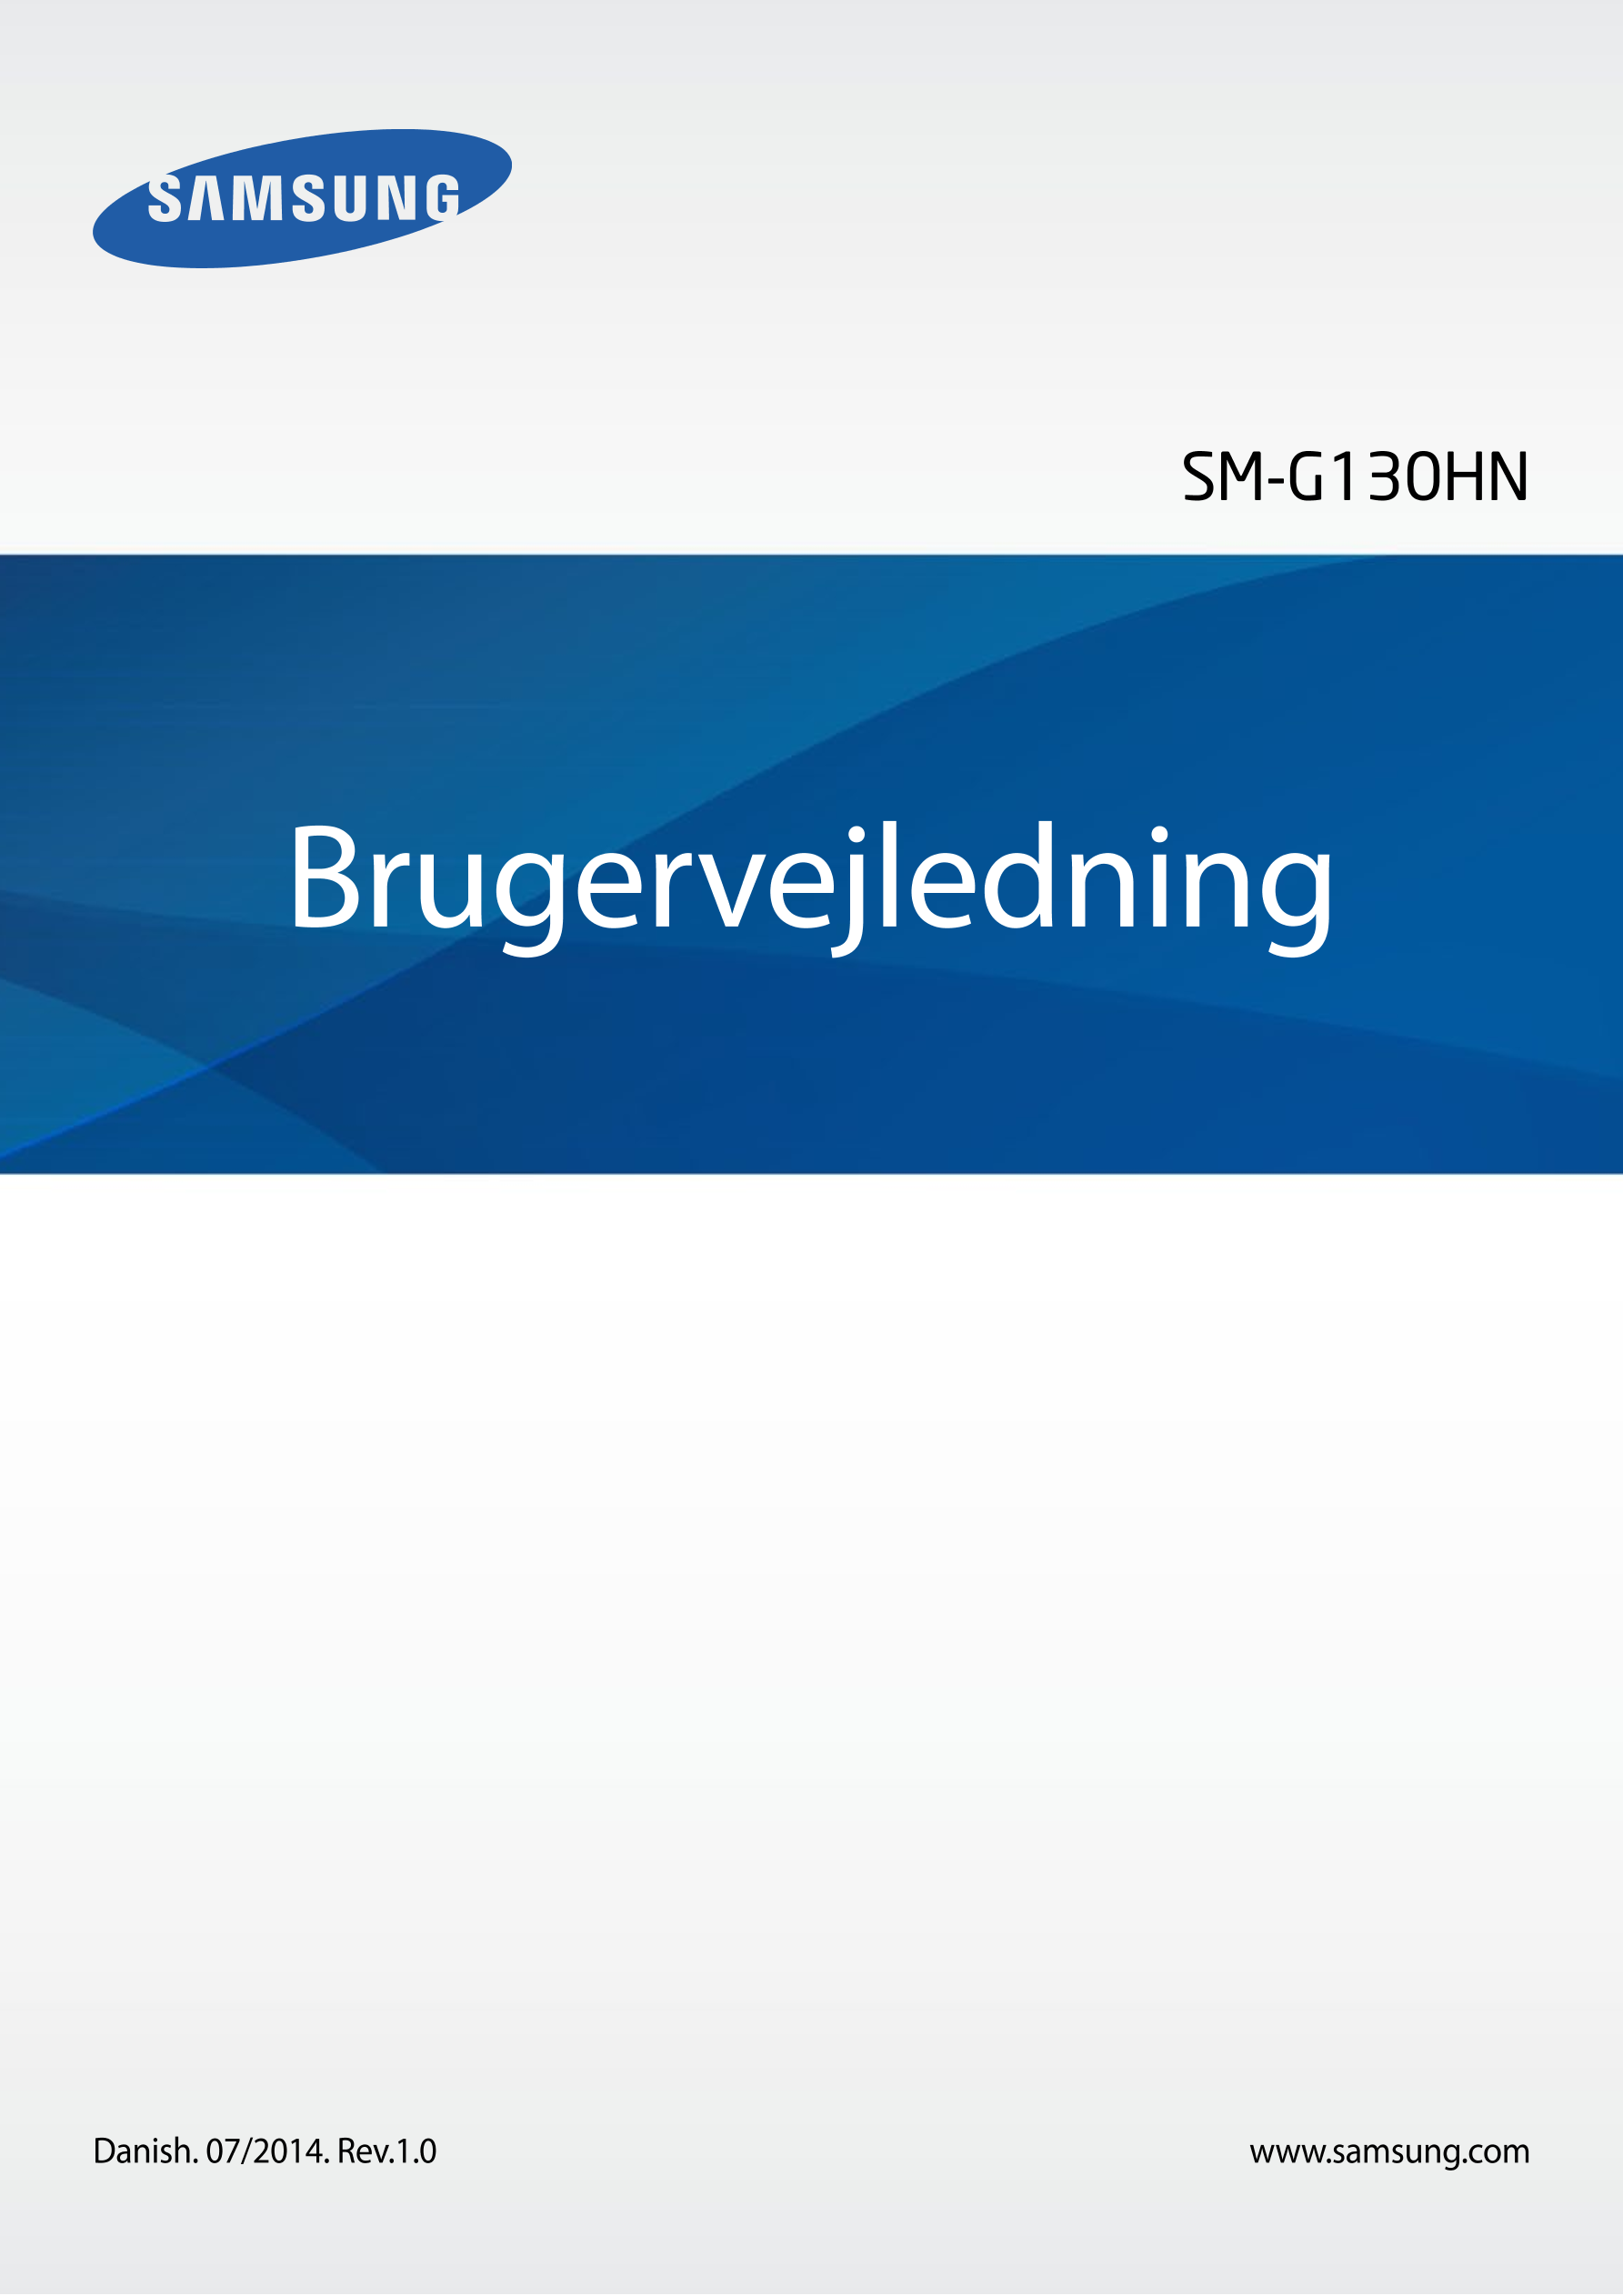 SM-G130HN
Brugervejledning
Danish. 07/2014. Rev.1.0 www.samsung.com